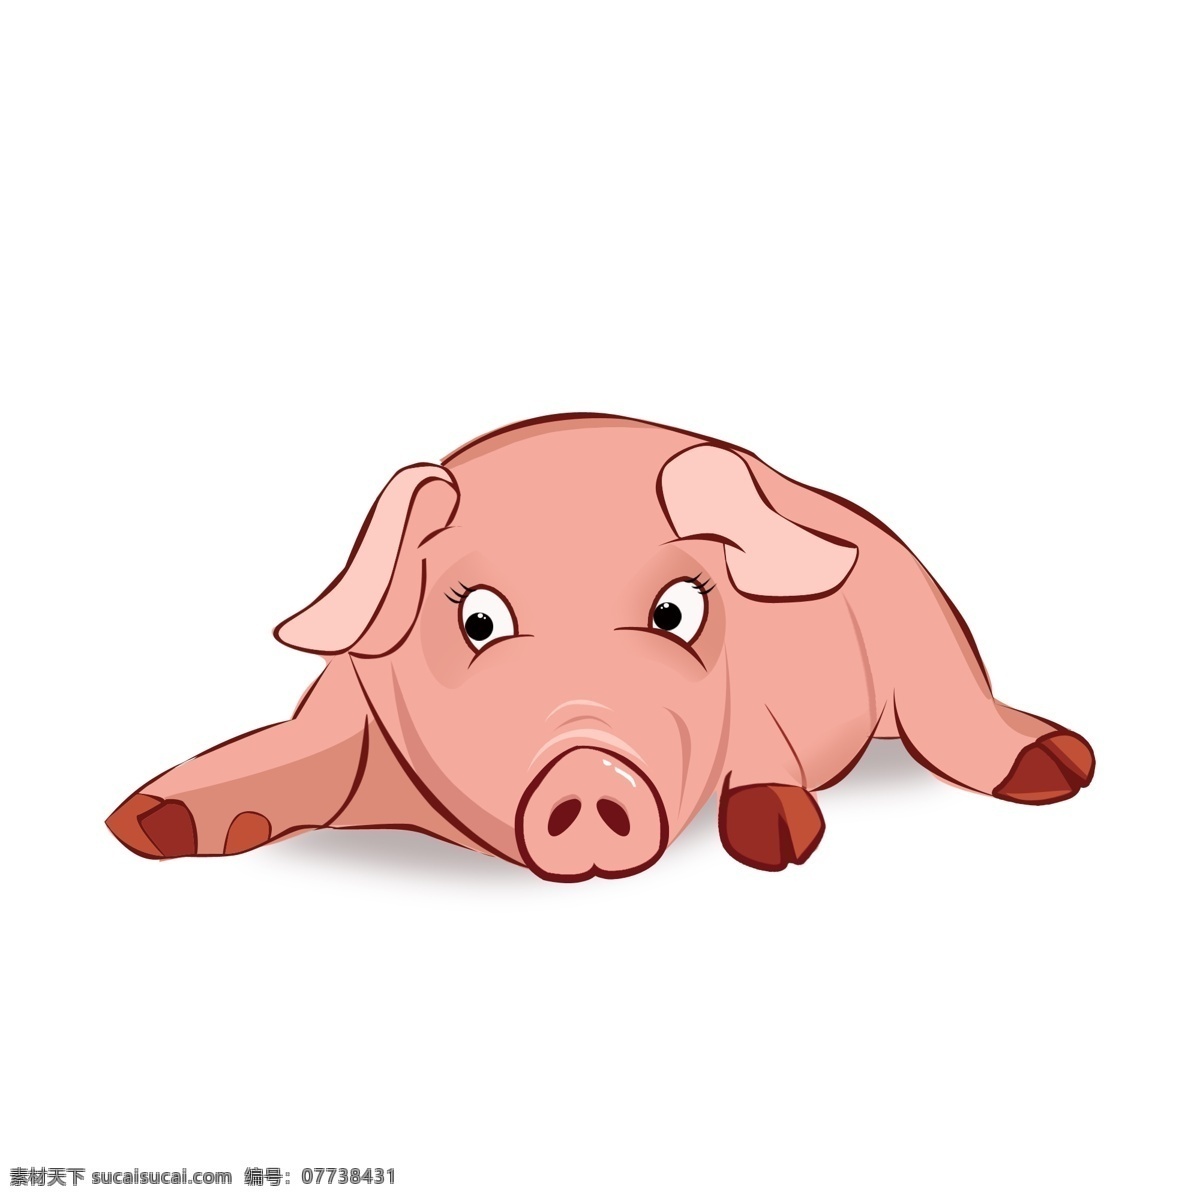 原创 猪 粉色 卡通 可爱 动物 元素 商用 2019 生肖 猪年 动物元素